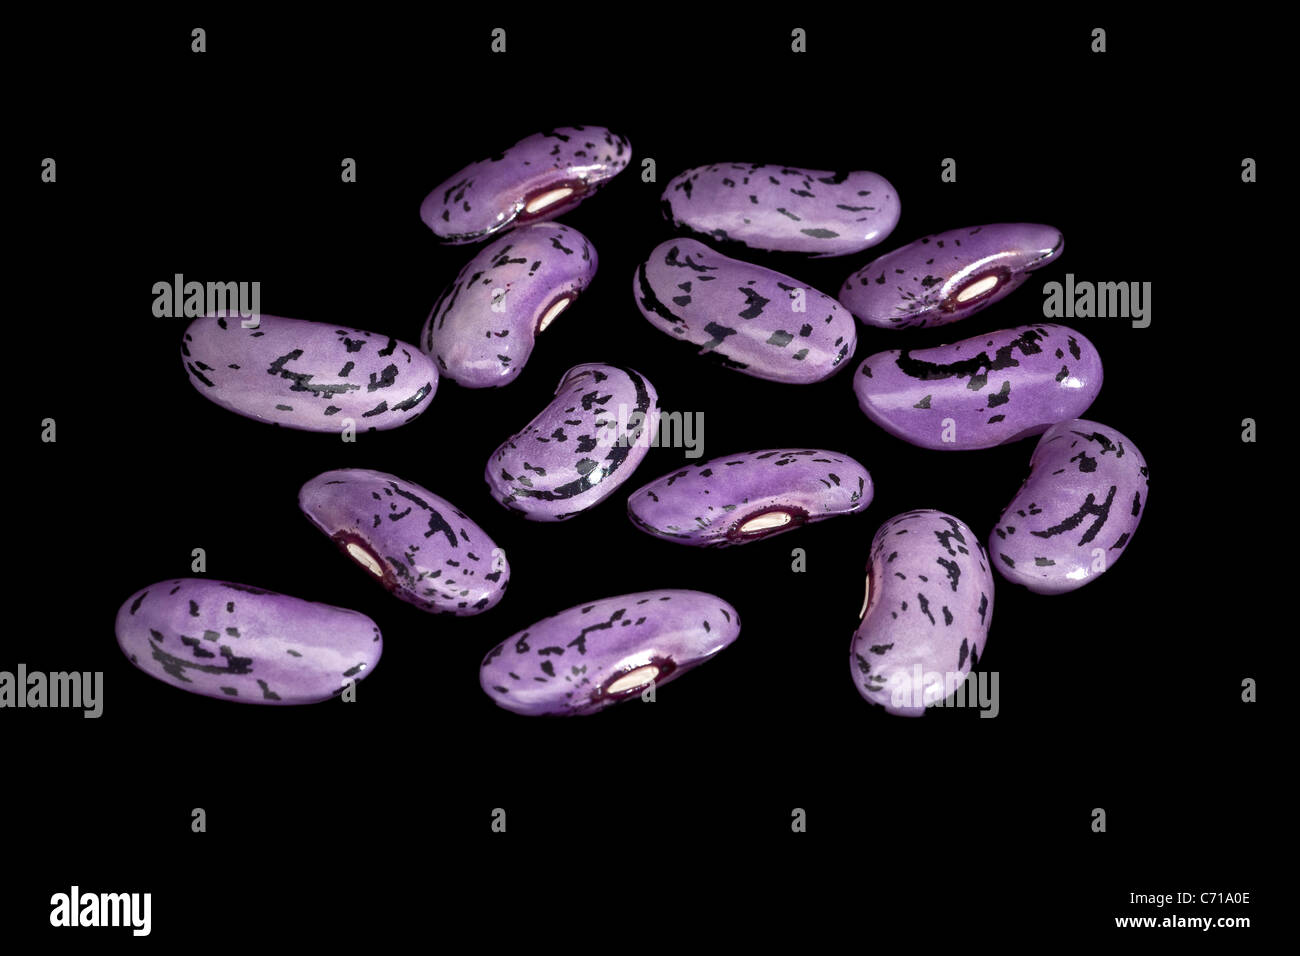 Scarlet runner beans (Phaseolus coccineus), photographié en studio sur un fond noir (macro / close-up). Banque D'Images